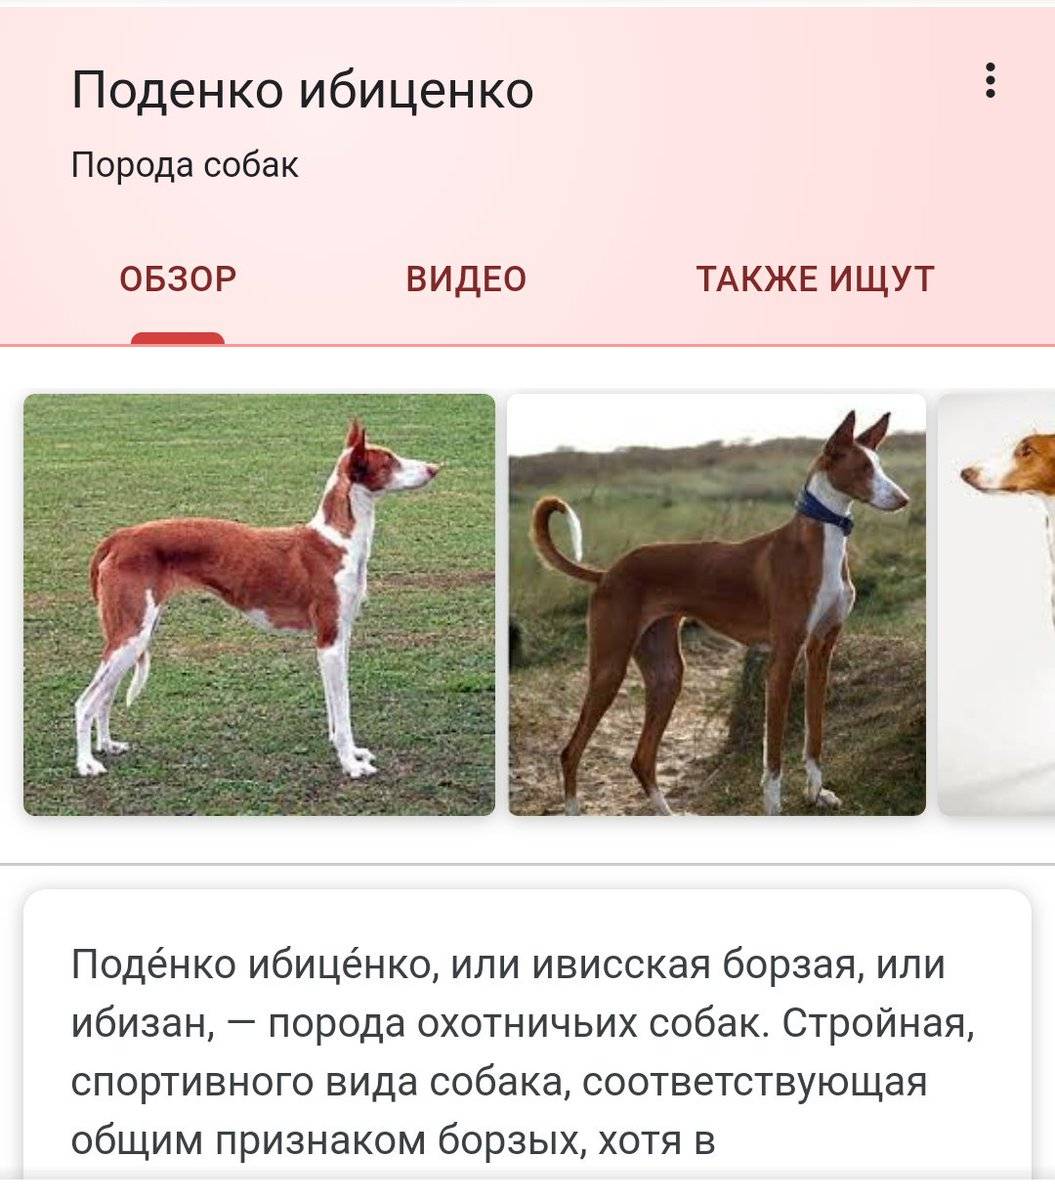 Поденко ибиценко (ивисская борзая) - описание породы собак, отзывы с фото | petguru